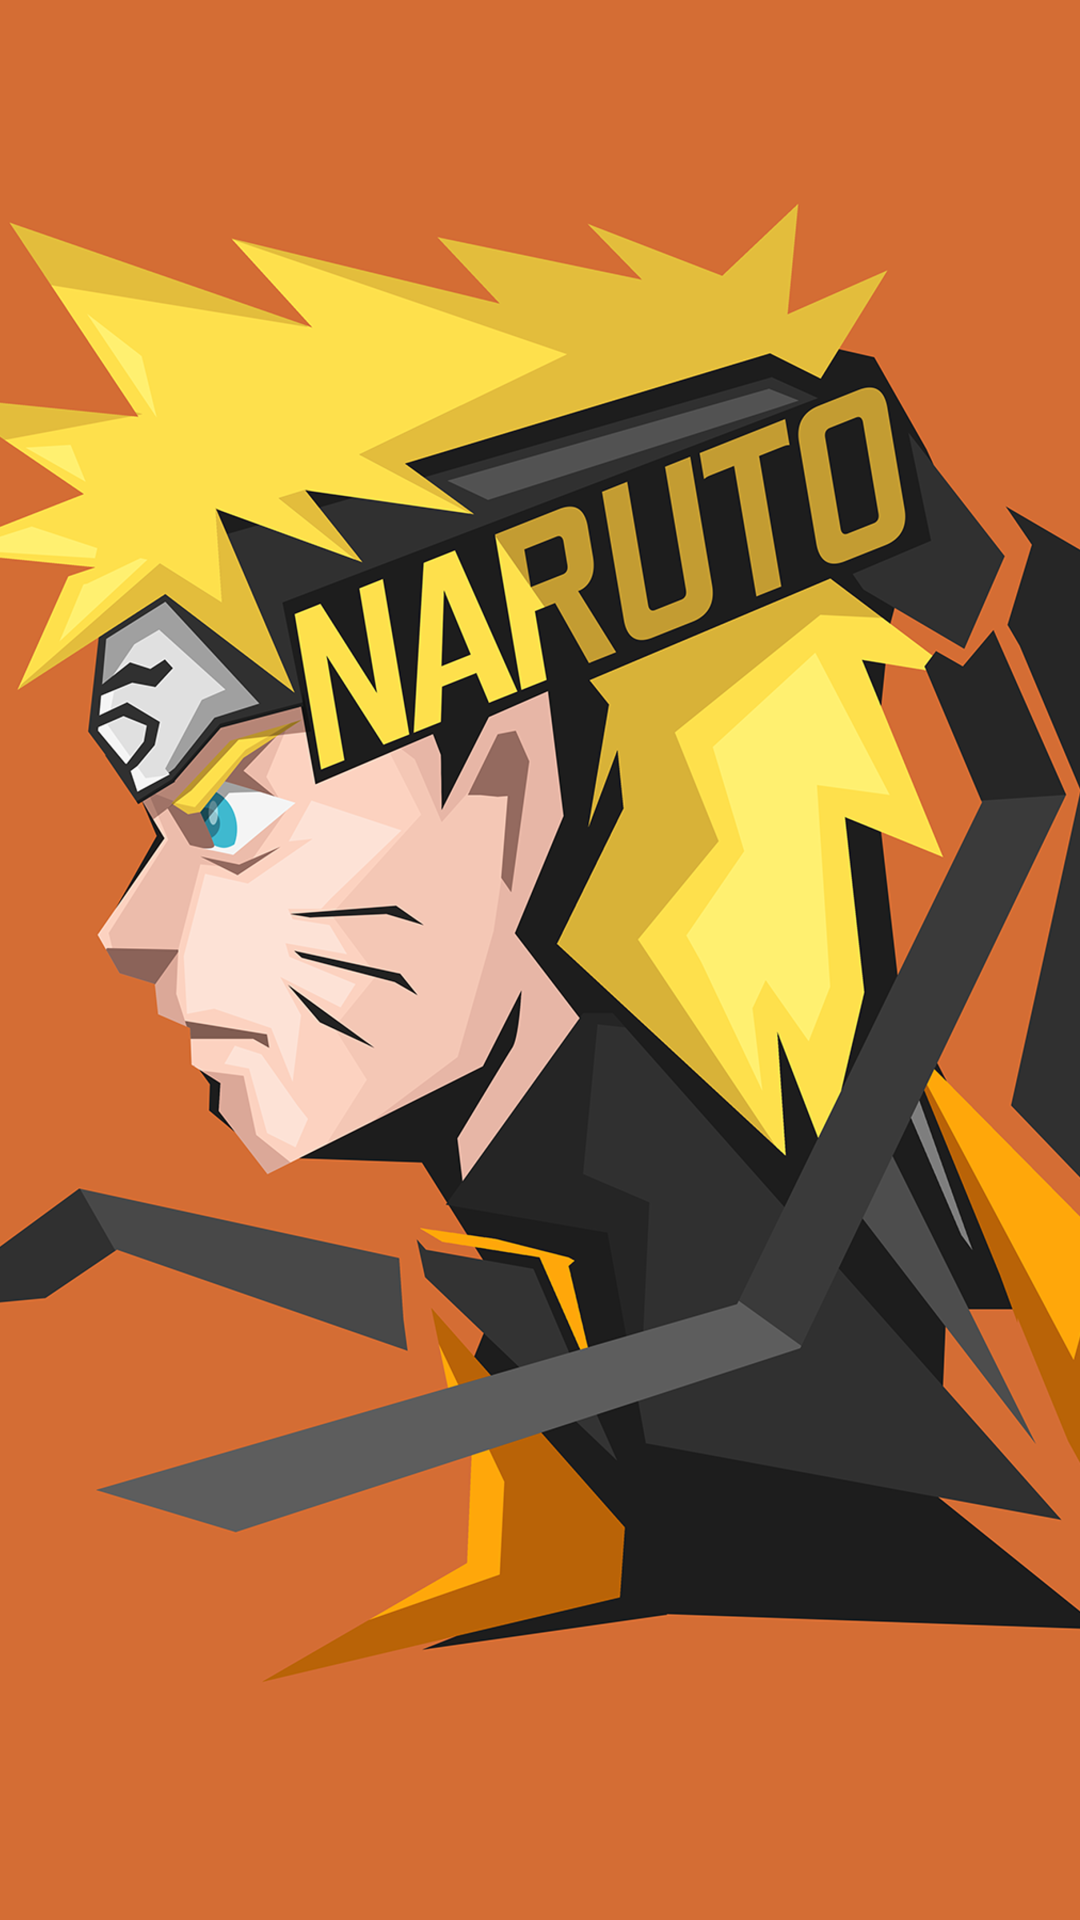 Naruto Uzumaki - nhân vật chính trong series anime nổi tiếng Naruto. Khám phá cuộc phiêu lưu đầy thử thách cùng với Naruto và trở thành một người hùng giống như anh ta. Hãy chiêm ngưỡng các hình ảnh của Naruto Uzumaki để tìm hiểu thêm về cuộc đời và chiến đấu của anh ta.